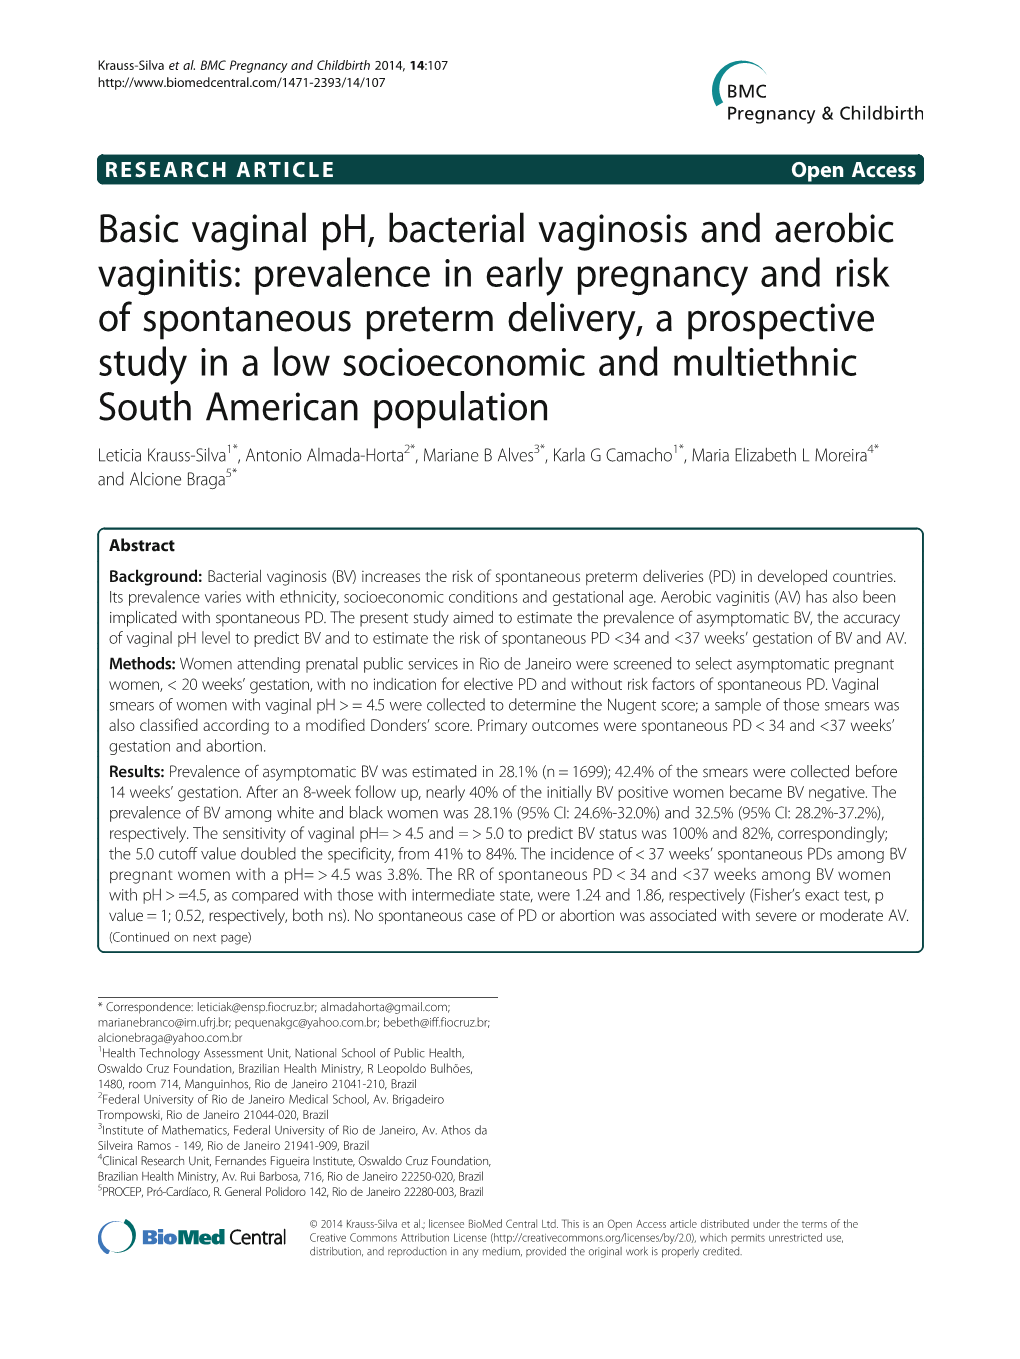 Basic Vaginal Ph, Bacterial Vaginosis and Aerobic Vaginitis